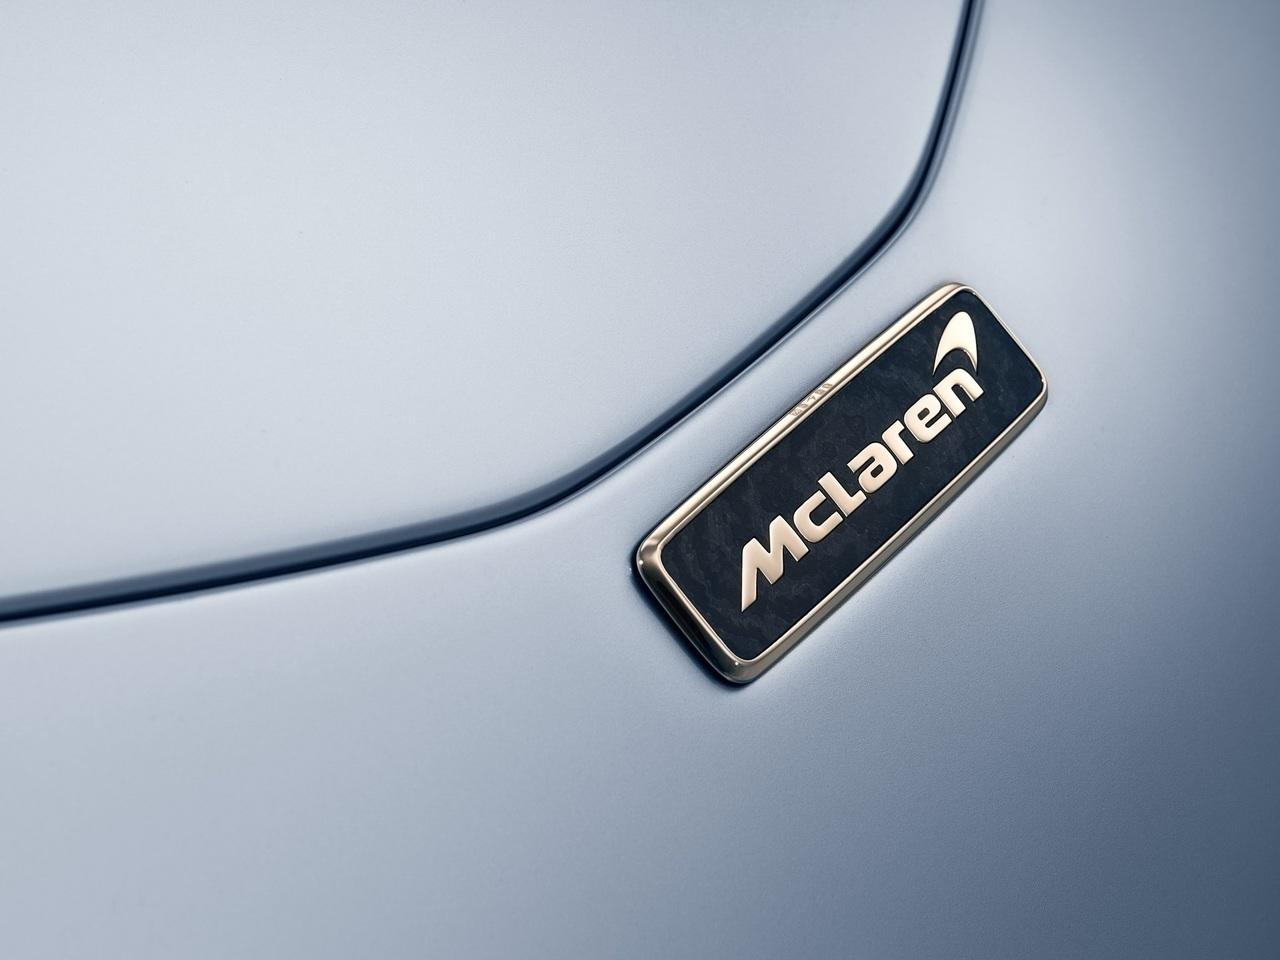 “McLaren” yeni superkarını təqdim etdi - FOTO